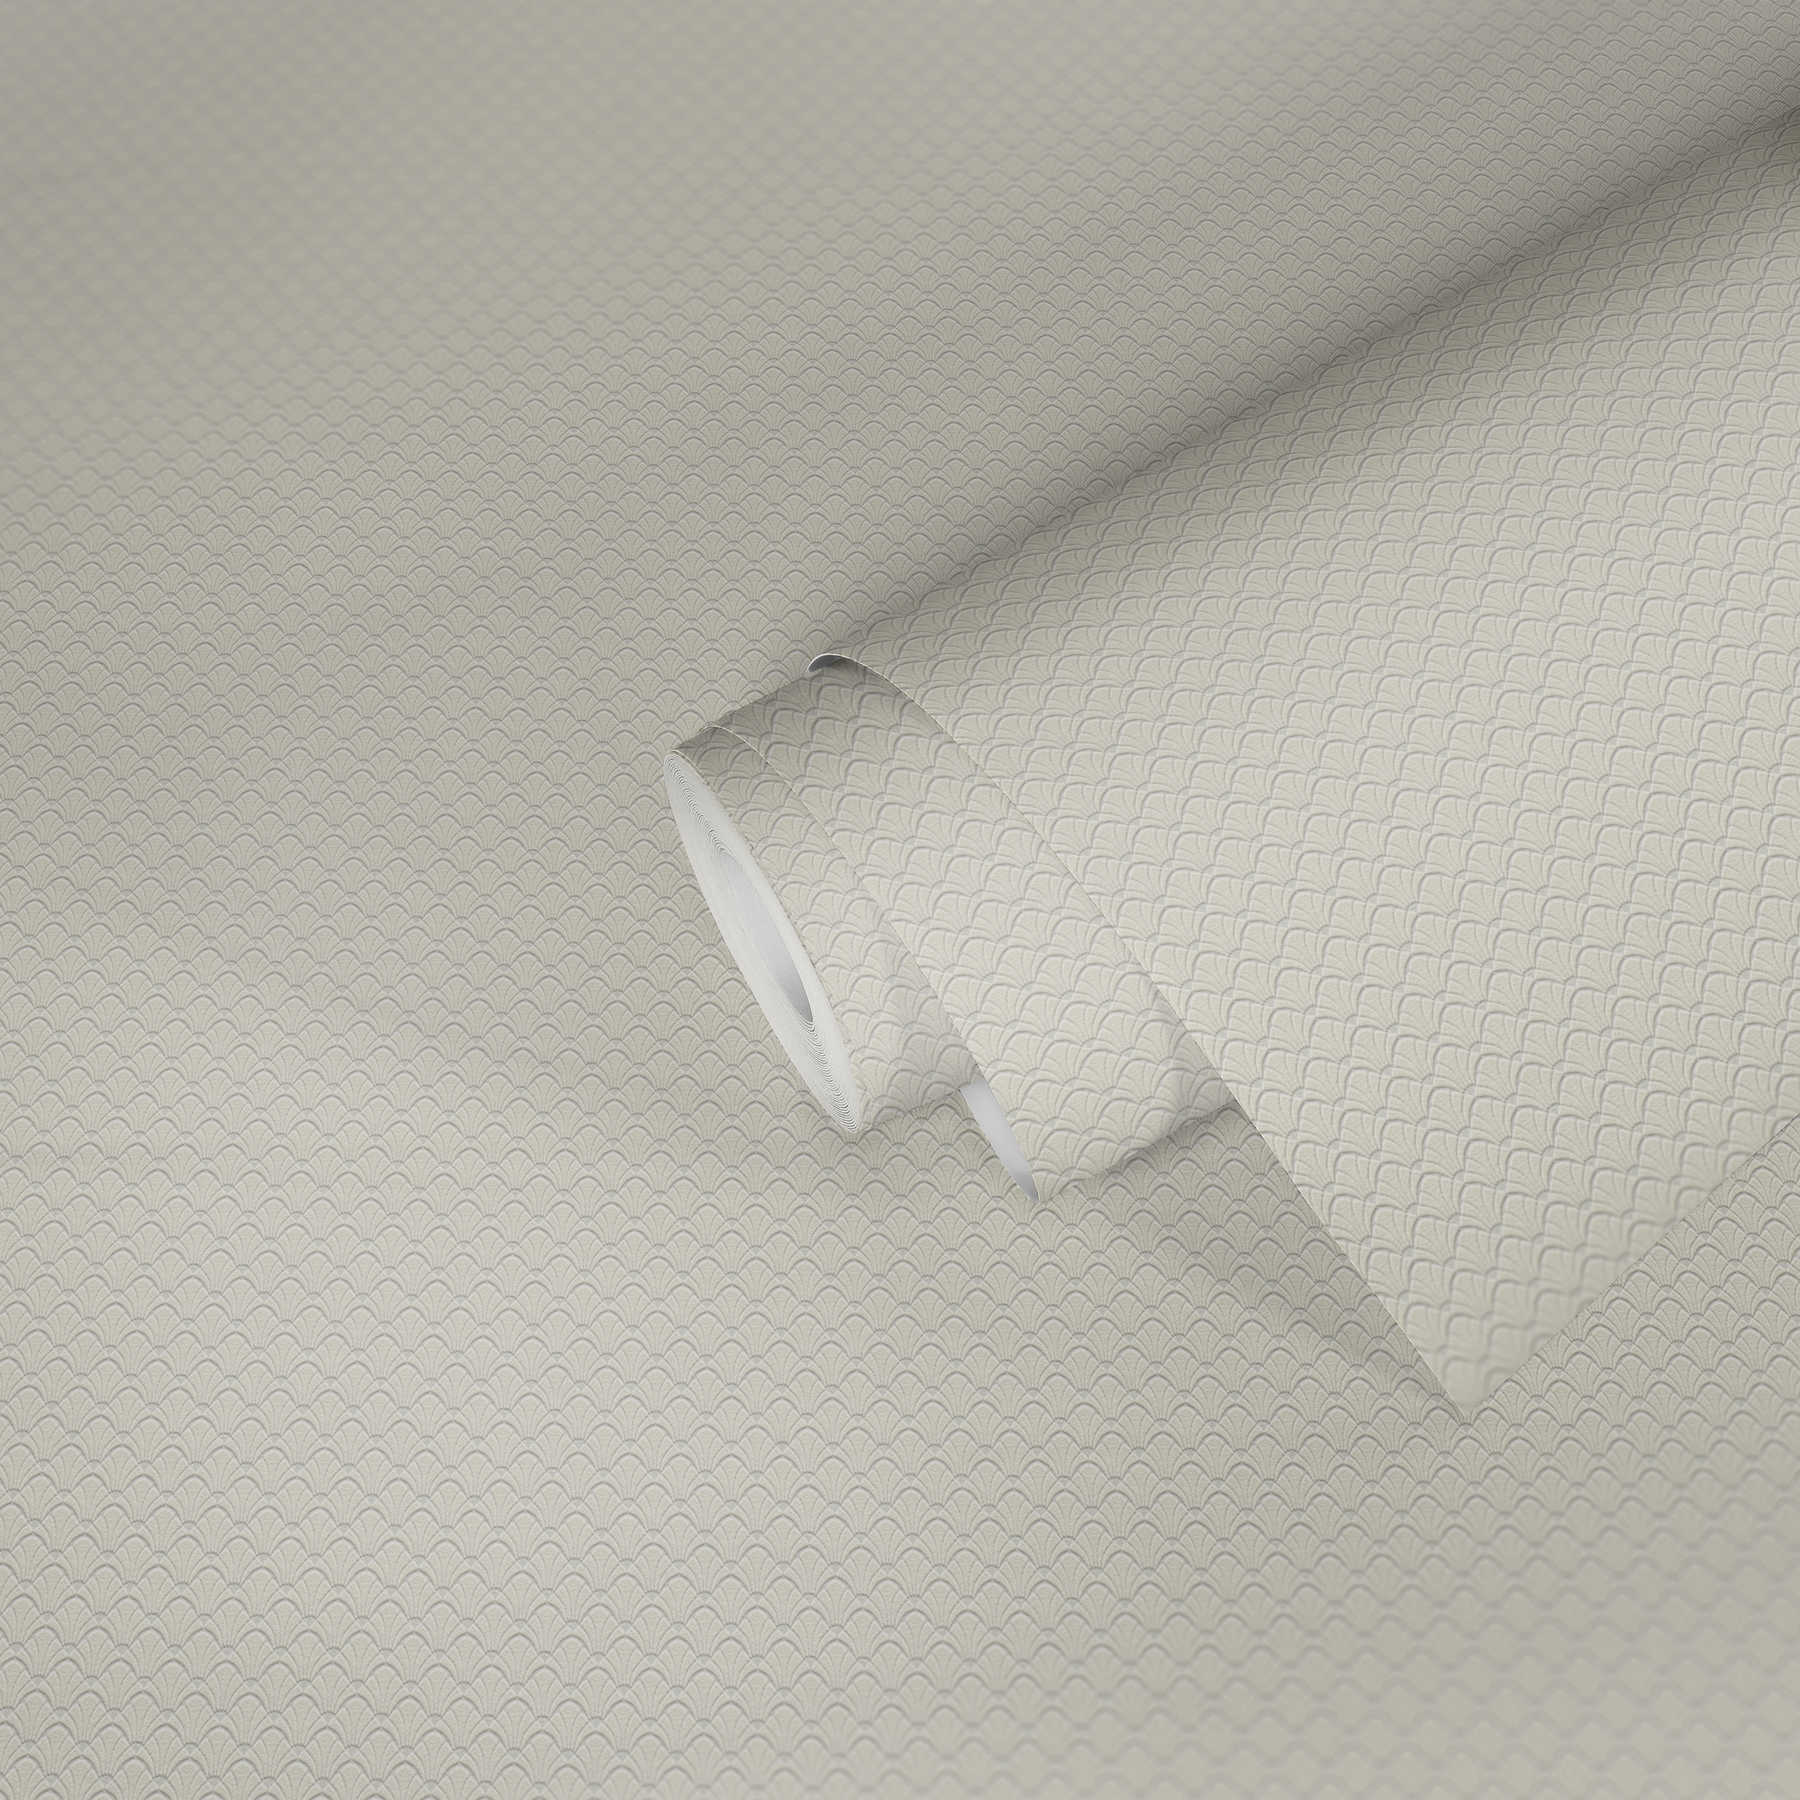             Tapete filigranes Strukturmuster im Muschel-Design – Creme, Weiß
        